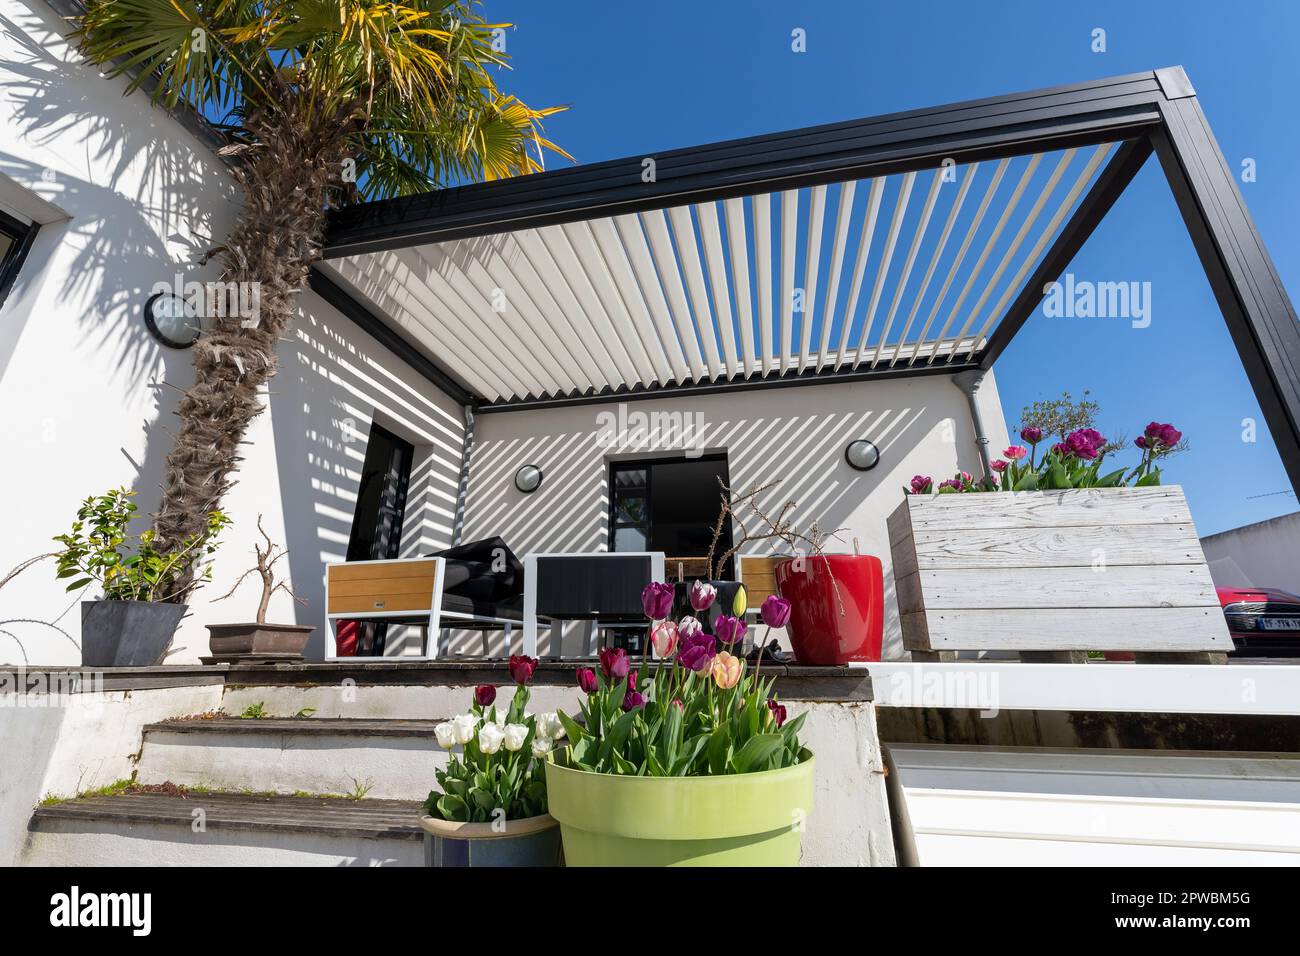 struttura bioclimatica ecologica in alluminio pergolato ombra, tendone e patio tetto, giardino lounge, sedie, griglia in metallo circondata da giardini Foto Stock